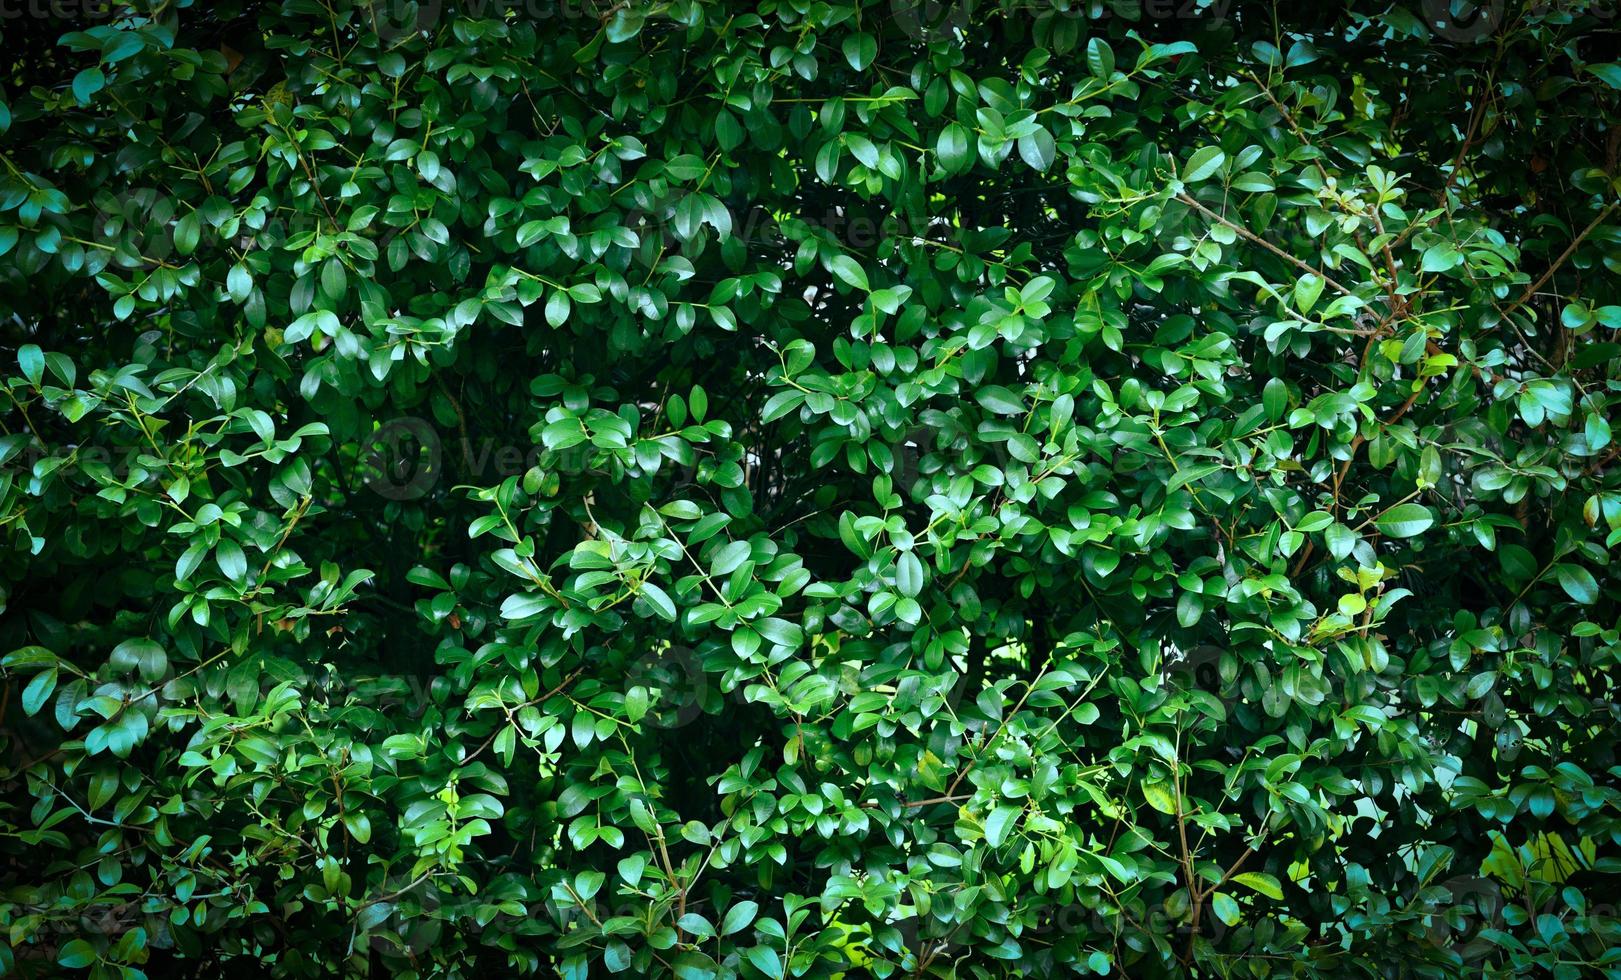 fond de texture de feuilles vertes - mur végétal naturel ou petite feuille dans la forêt photo